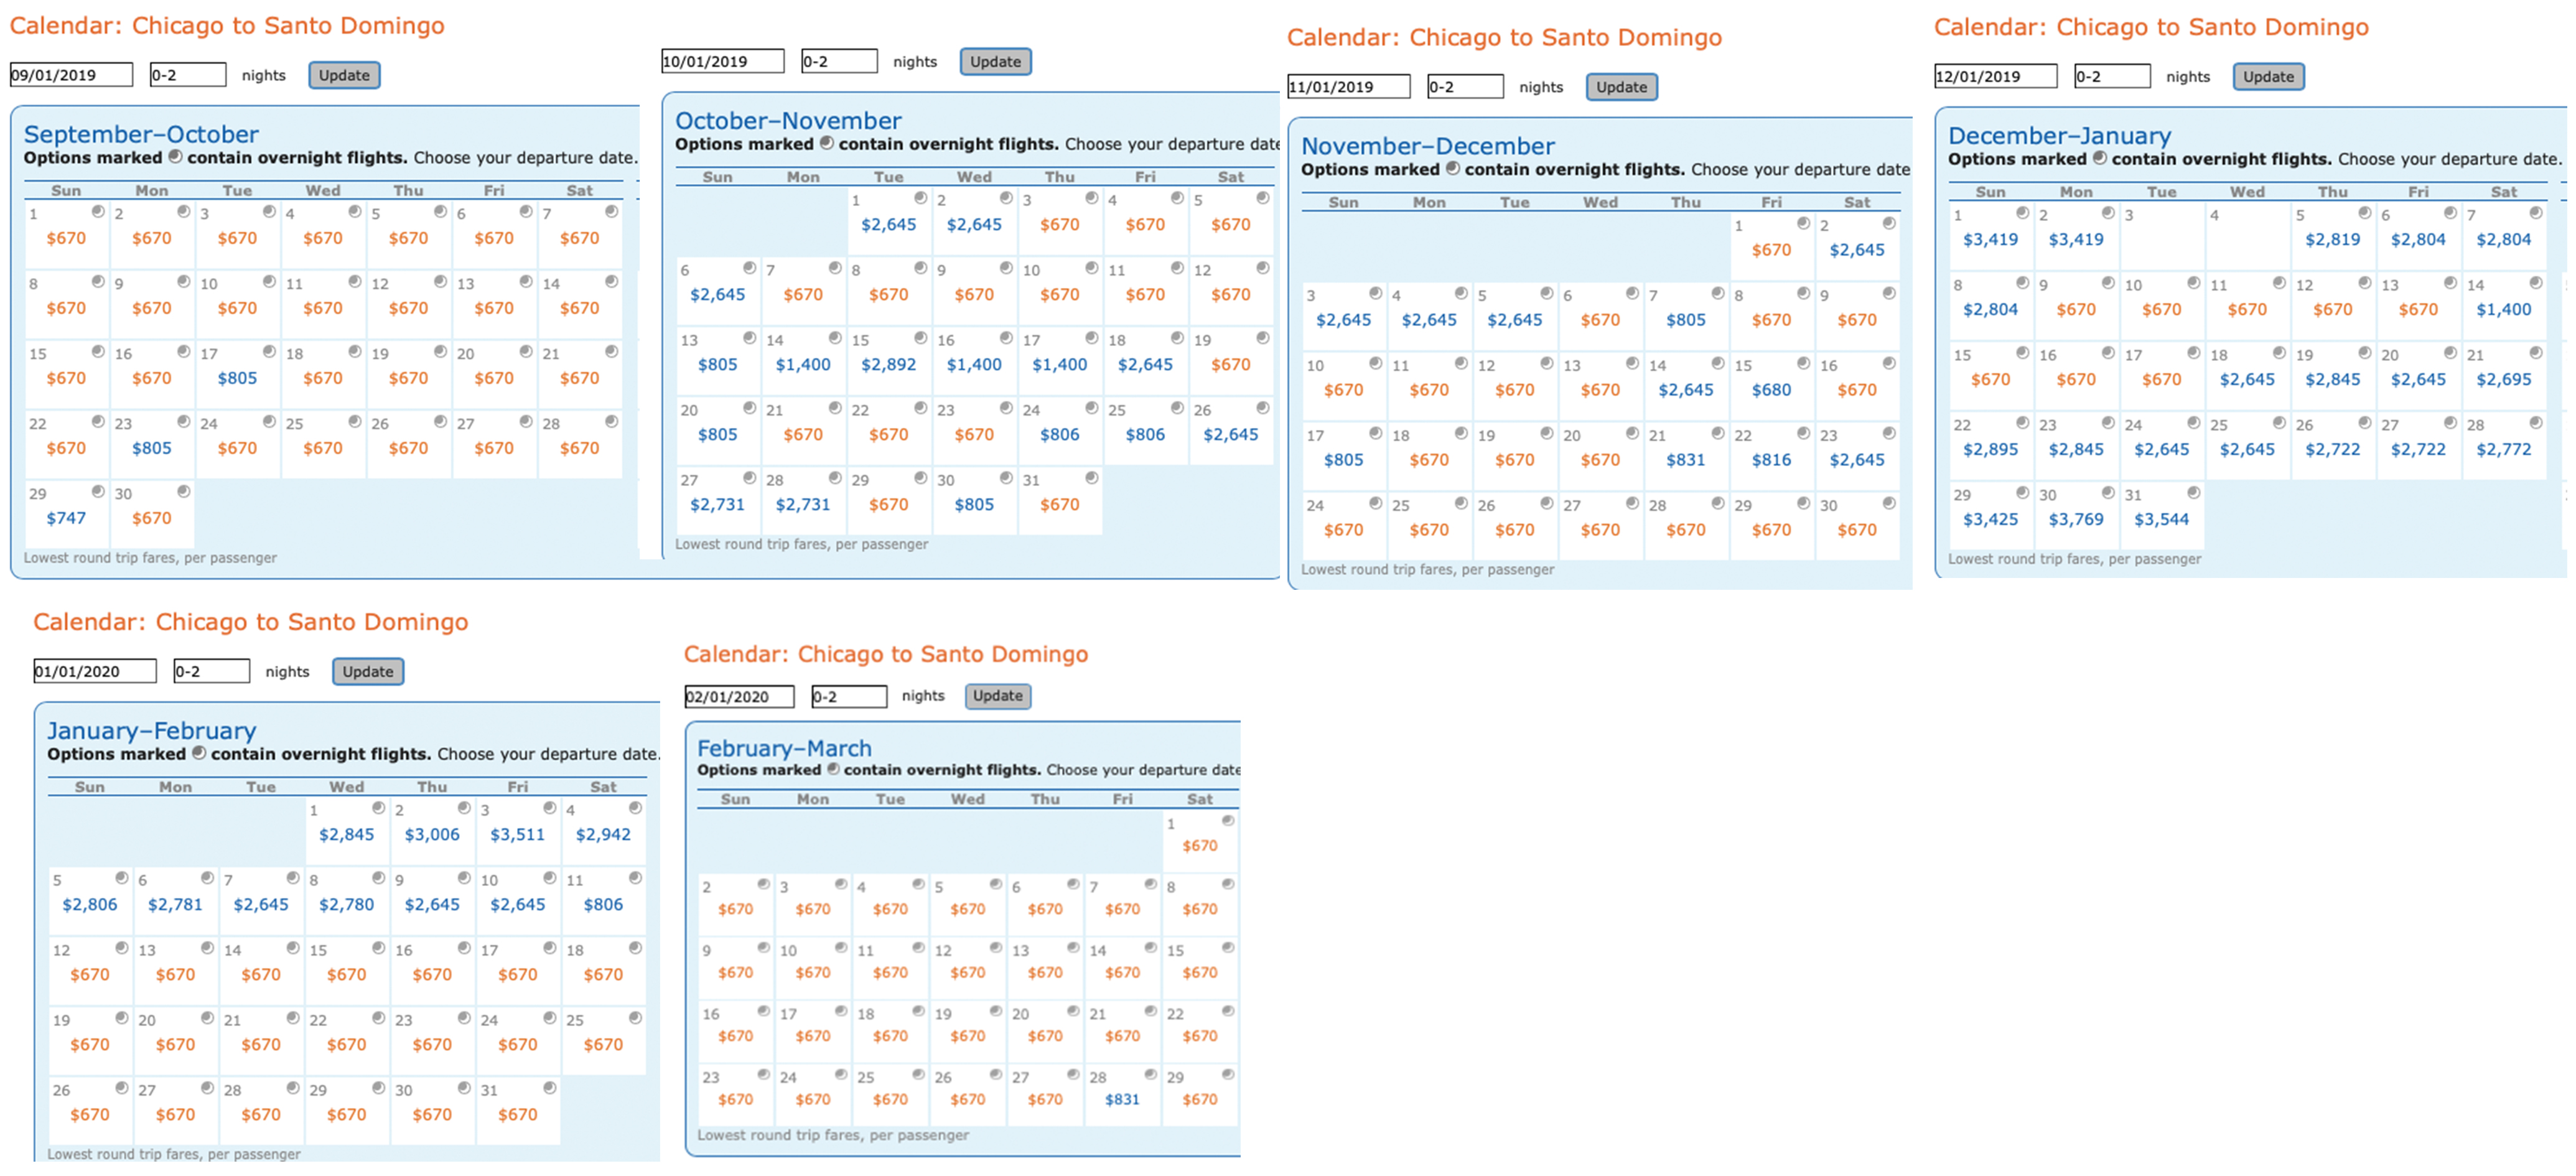 Calendar of Delta MQD run itineraries on Aeromexico from Chicago O'Hare (ORD) to Santo Domingo (SDQ) Dominican Republic.